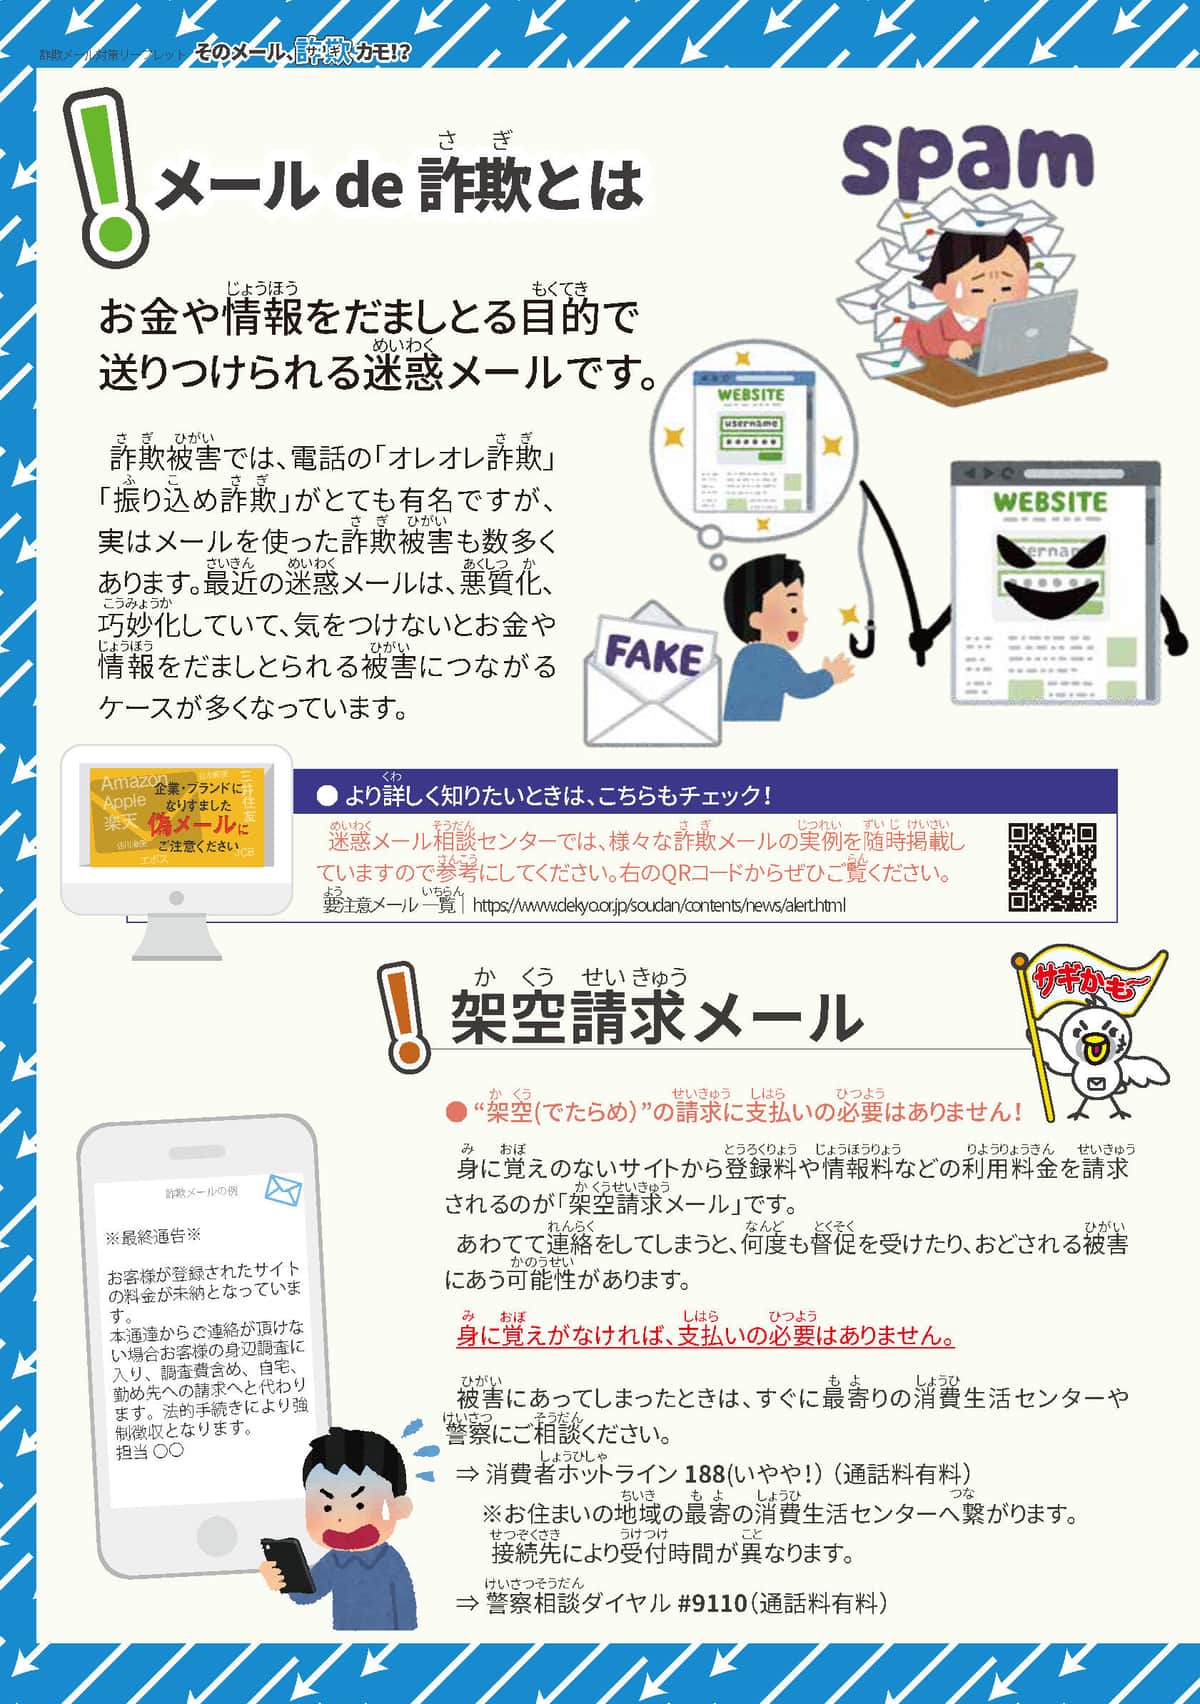 詐欺メール対策リーフレット（日本データ通信協会提供）